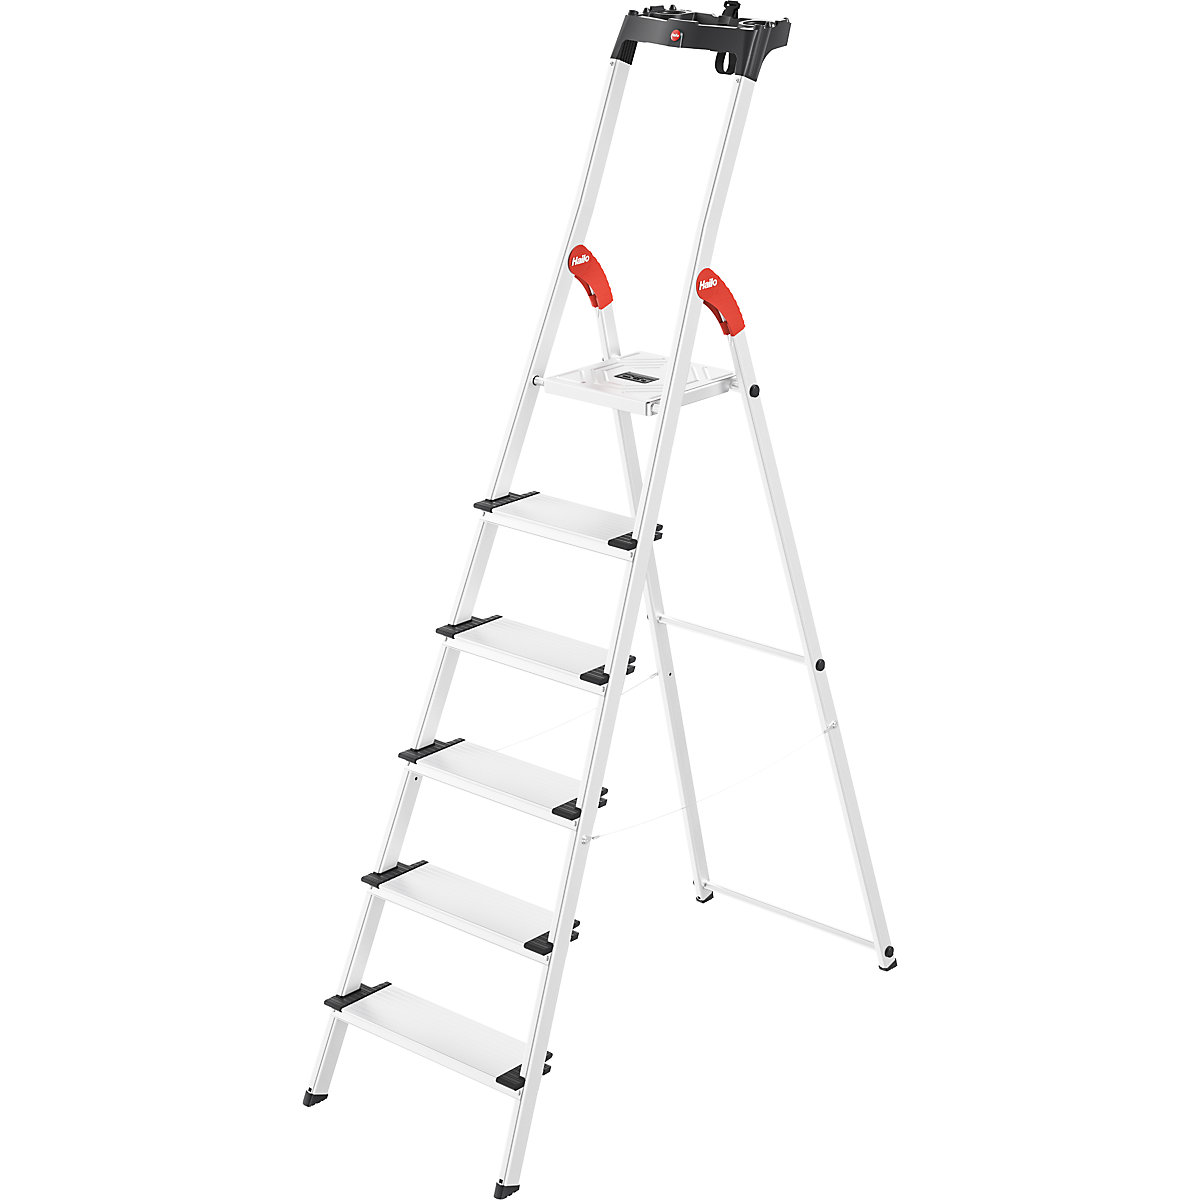 Aluminijasta dvokraka lestev s stopnicami ComfortLine L80 – Hailo, nosilnost 150 kg, 6 stopnic, od 2 kosov